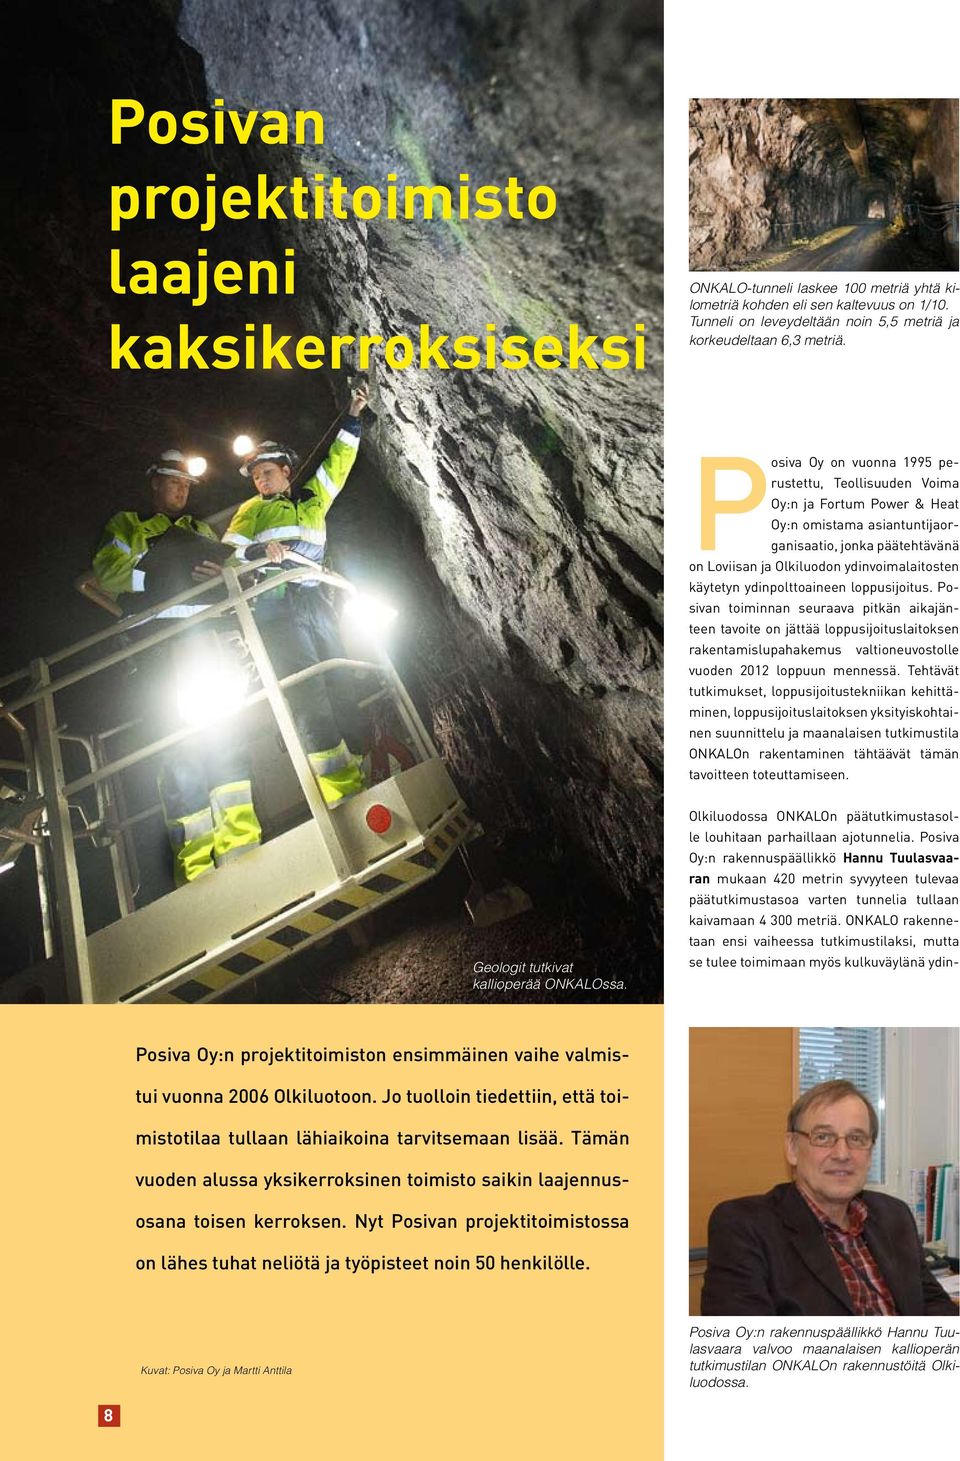 Posiva Oy on vuonna 1995 perustettu, Teollisuuden Voima Oy:n ja Fortum Power & Heat Oy:n omistama asiantuntijaorganisaatio, jonka päätehtävänä on Loviisan ja Olkiluodon ydinvoimalaitosten käytetyn